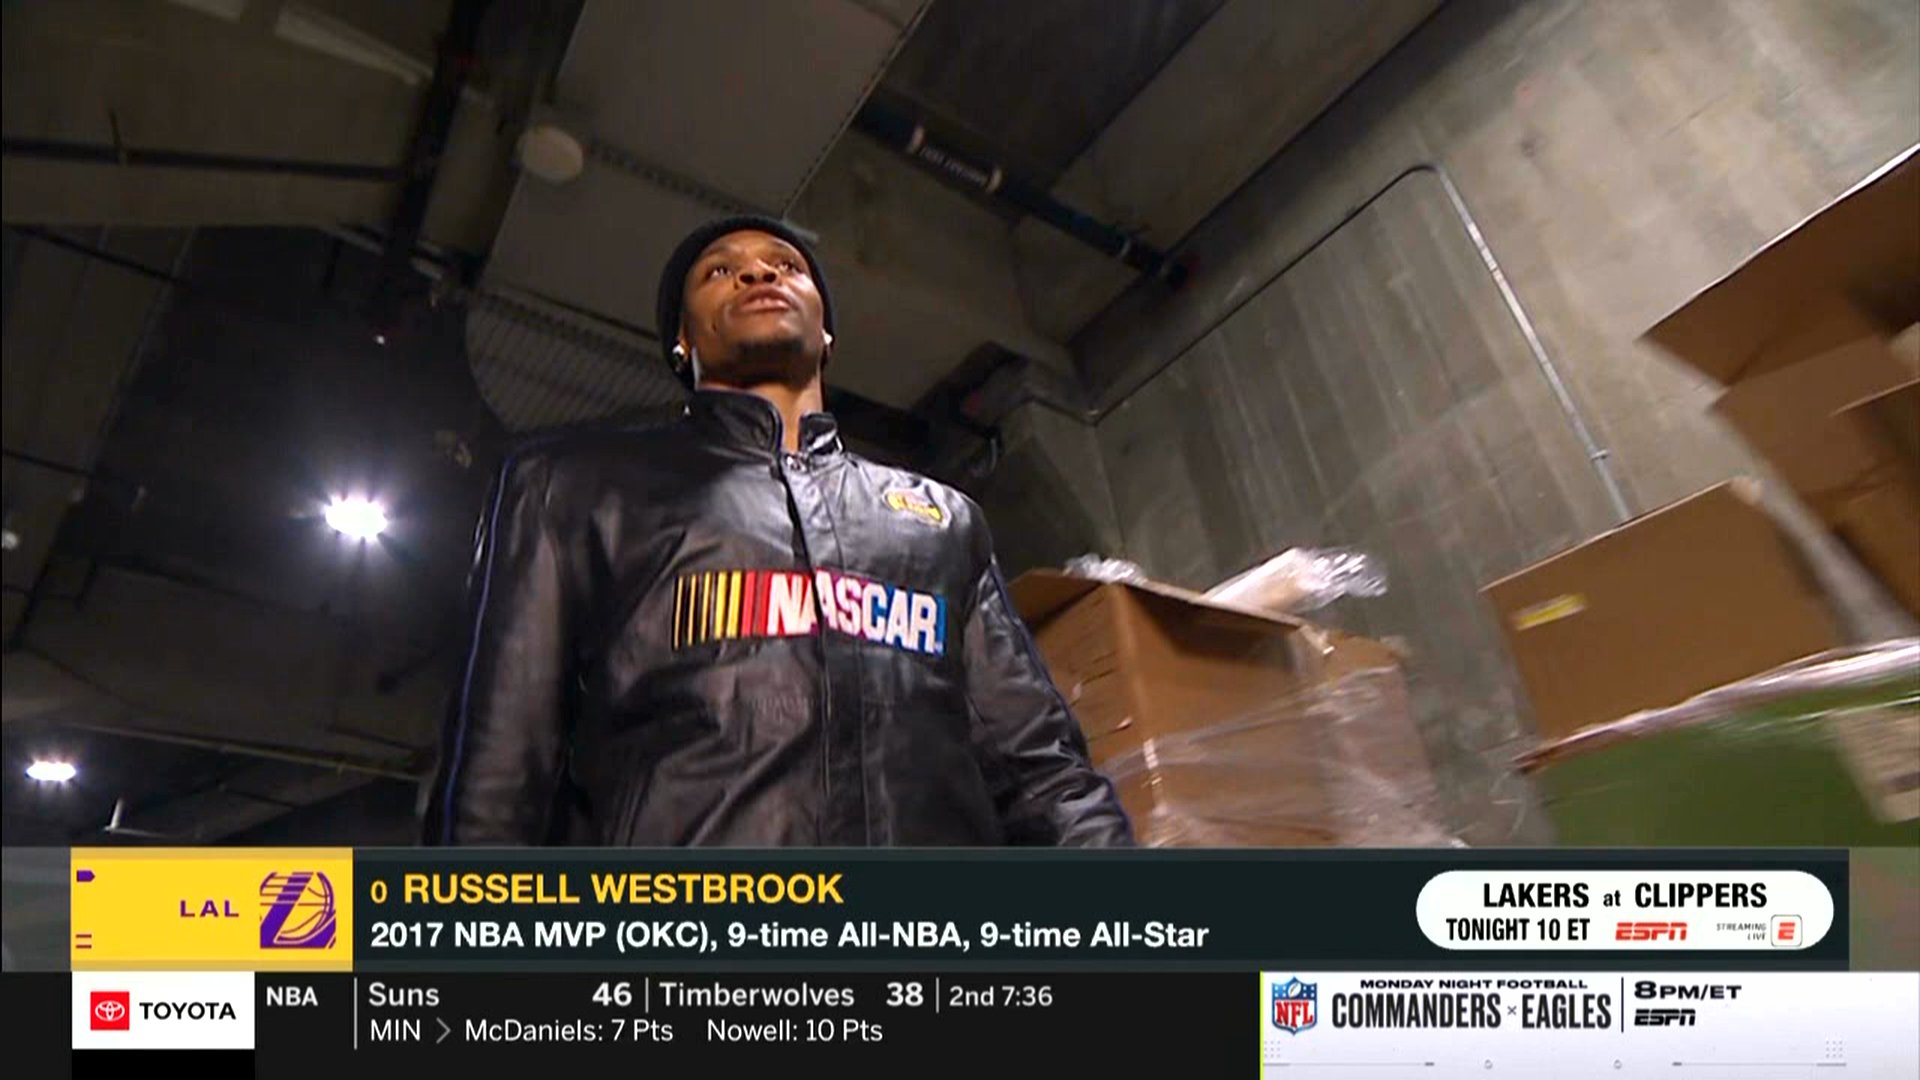 westbrook nascar jacket